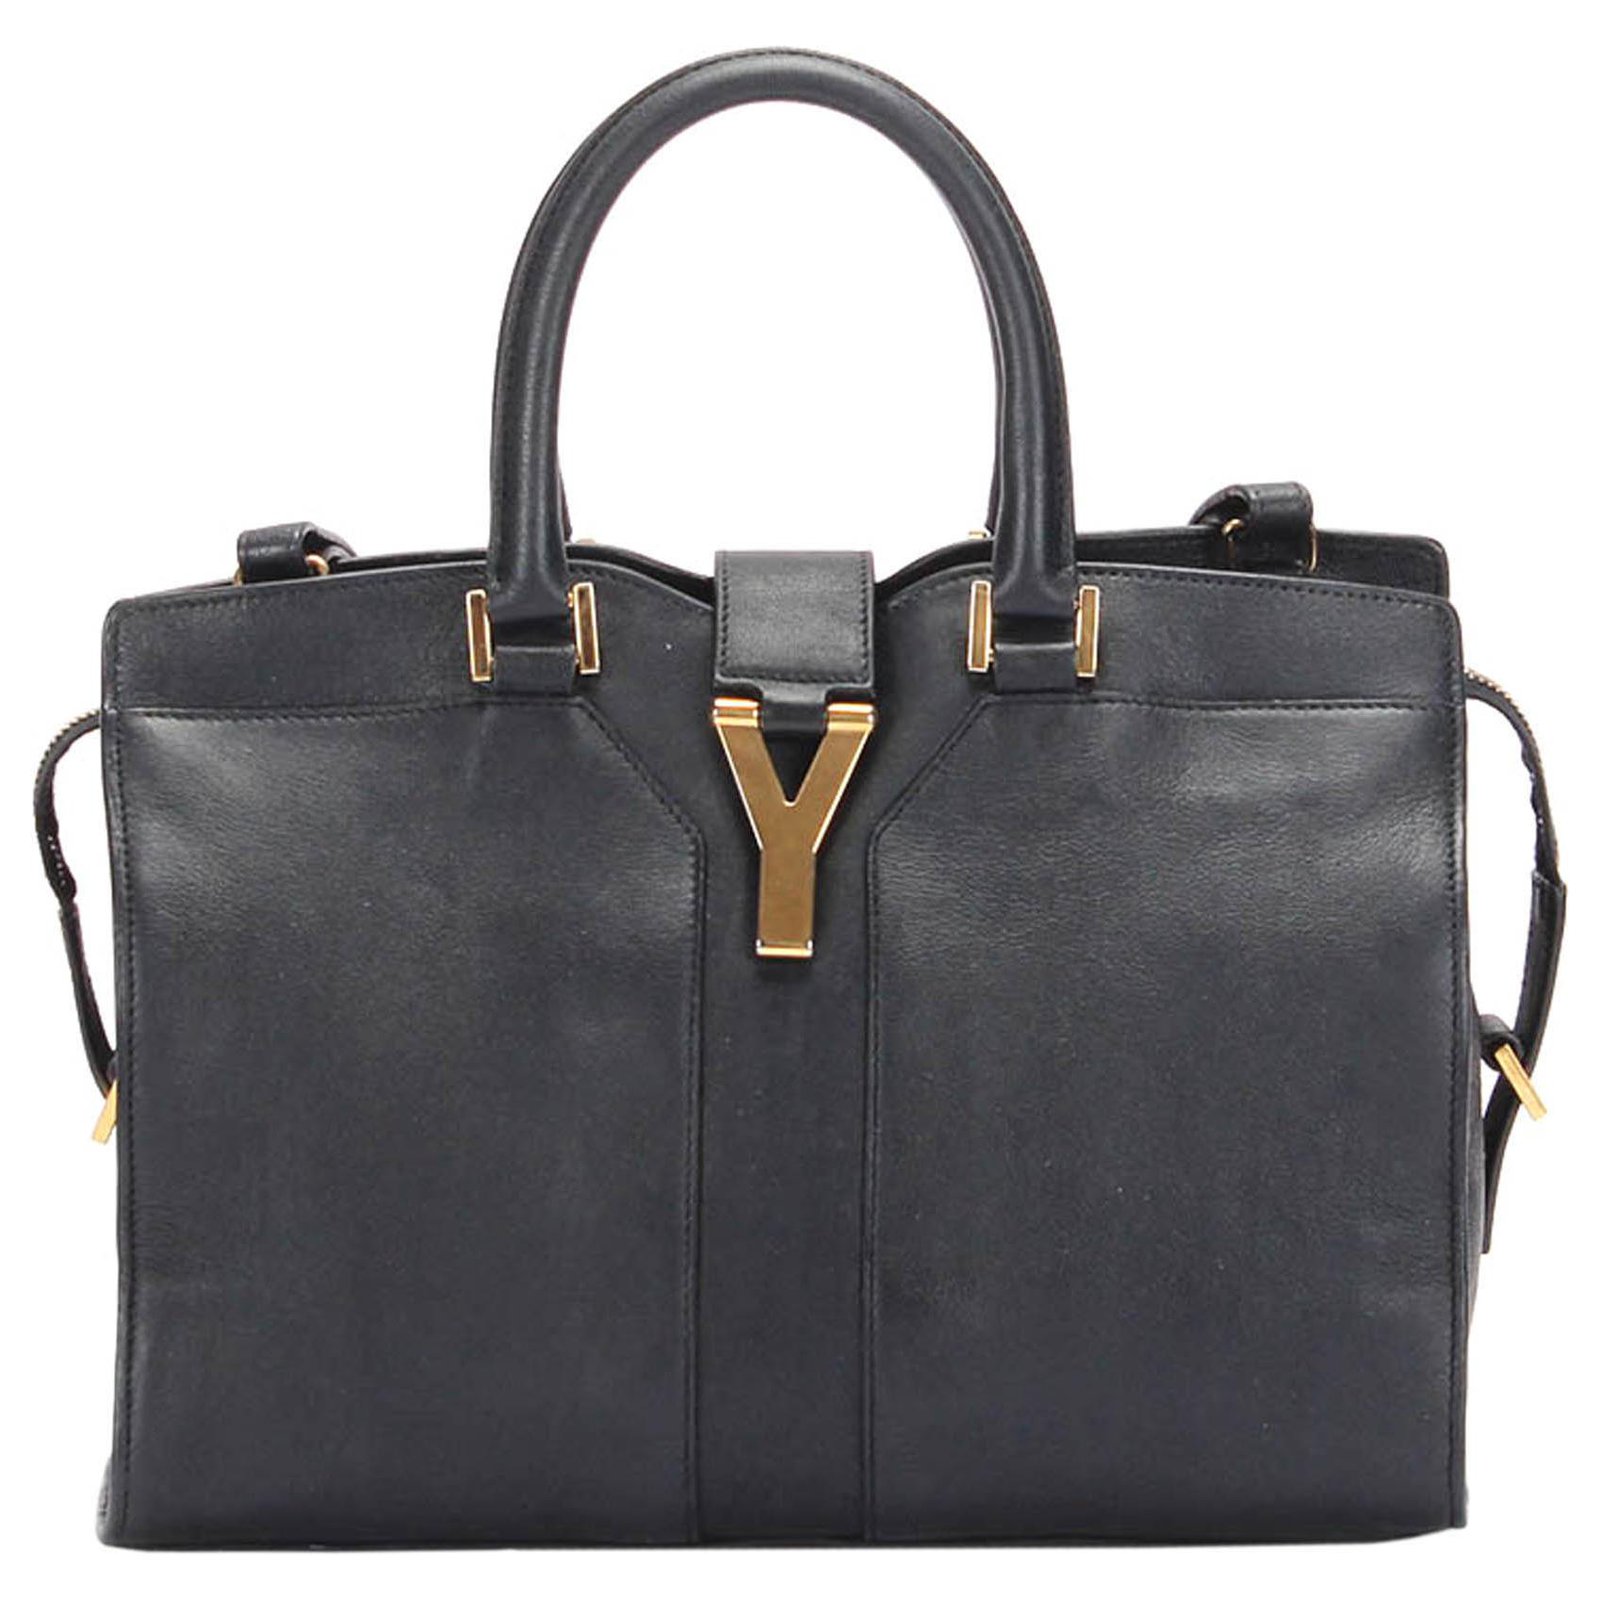 YSL Black Cabas Bag